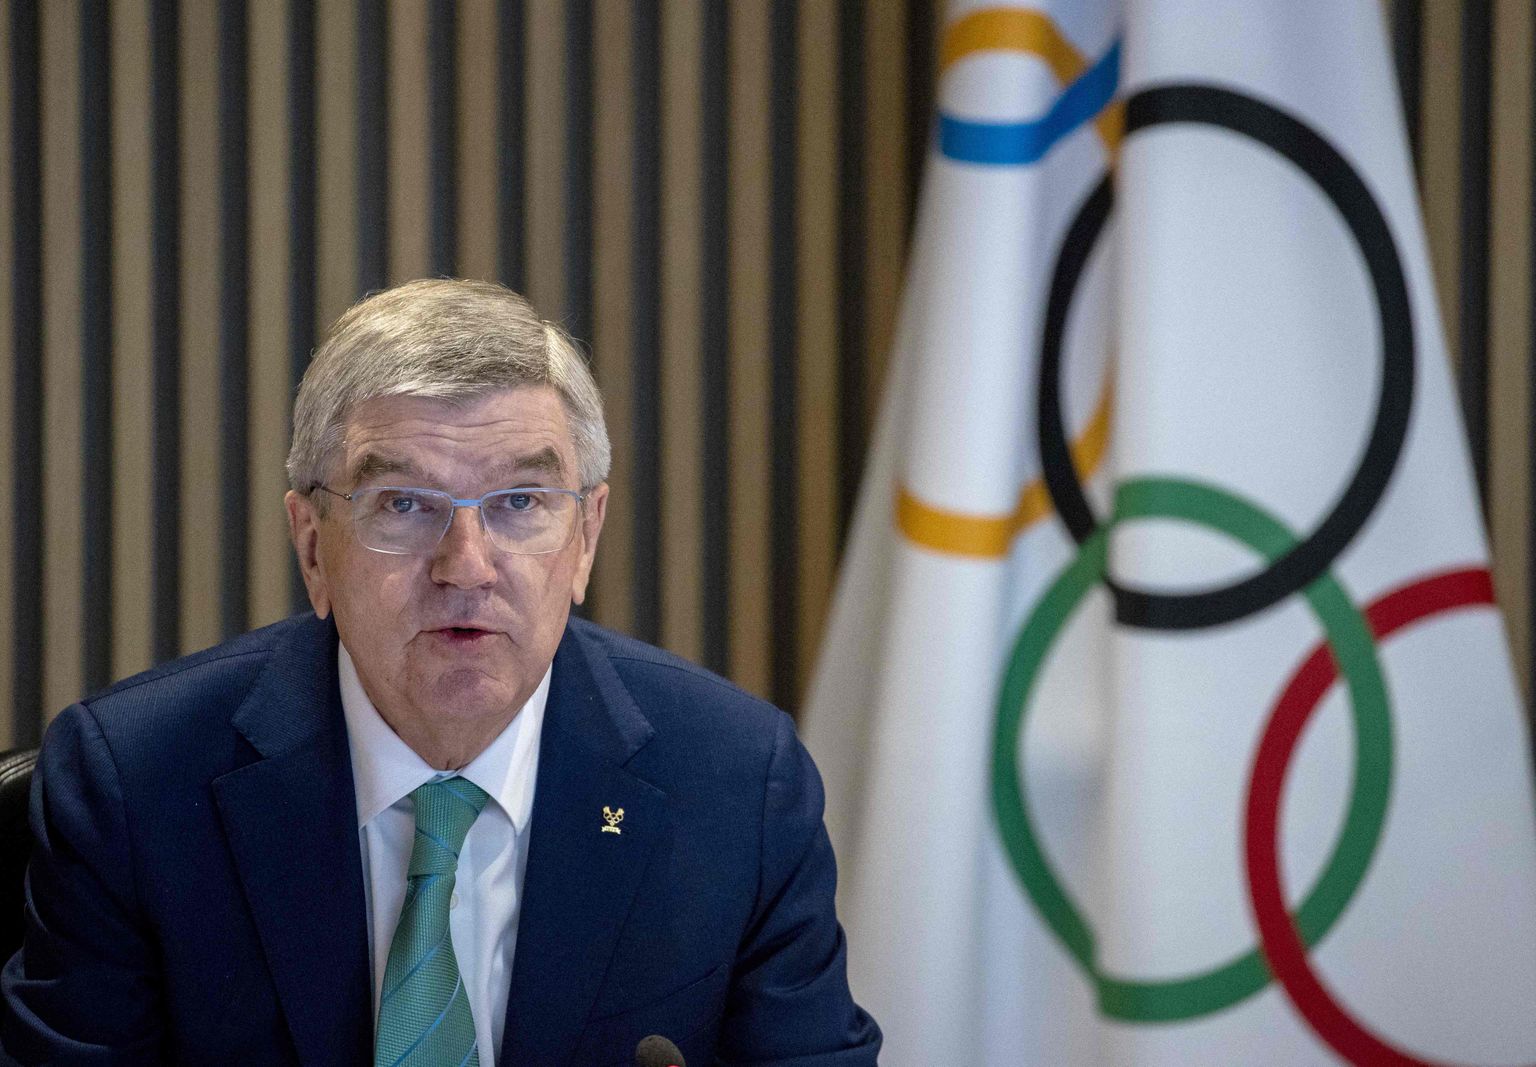 Starptautiskās Olimpiskās komitejas (SOK) prezidents Tomass Bahs